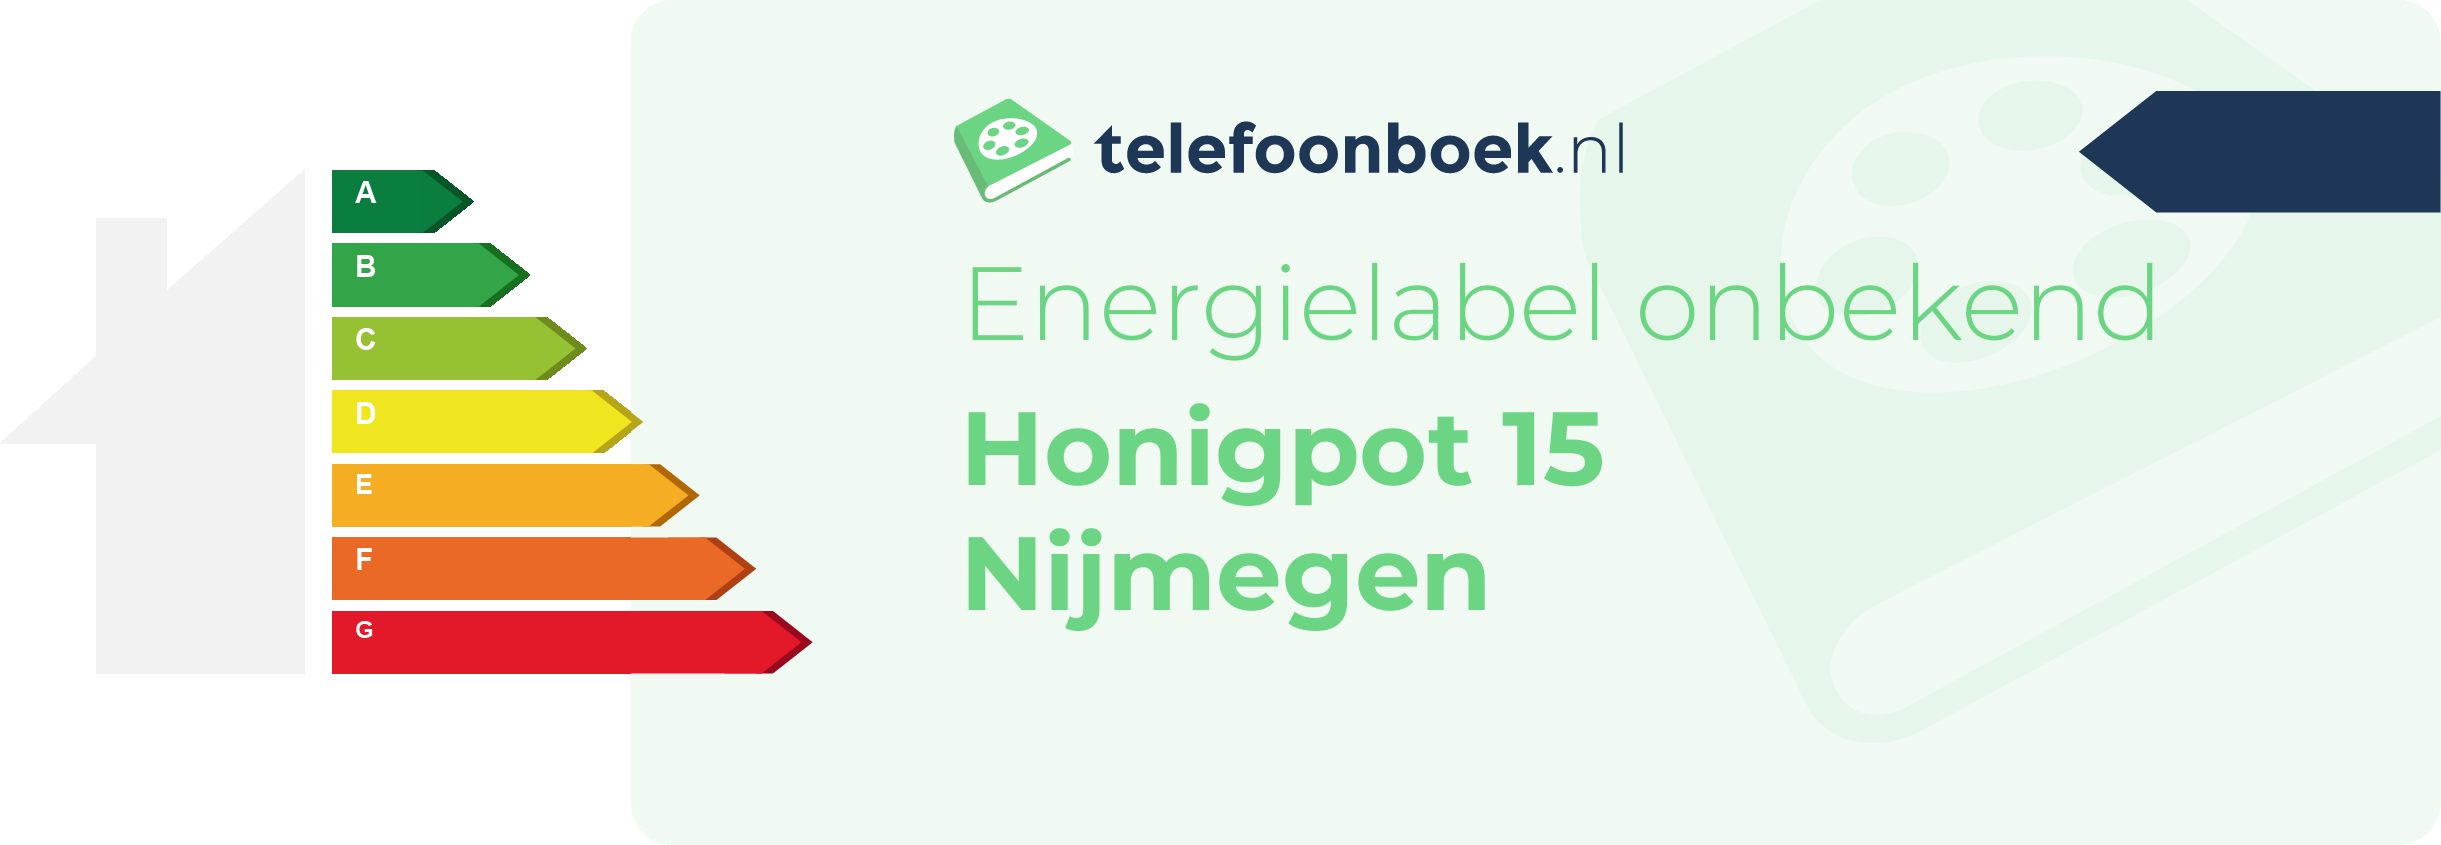 Energielabel Honigpot 15 Nijmegen